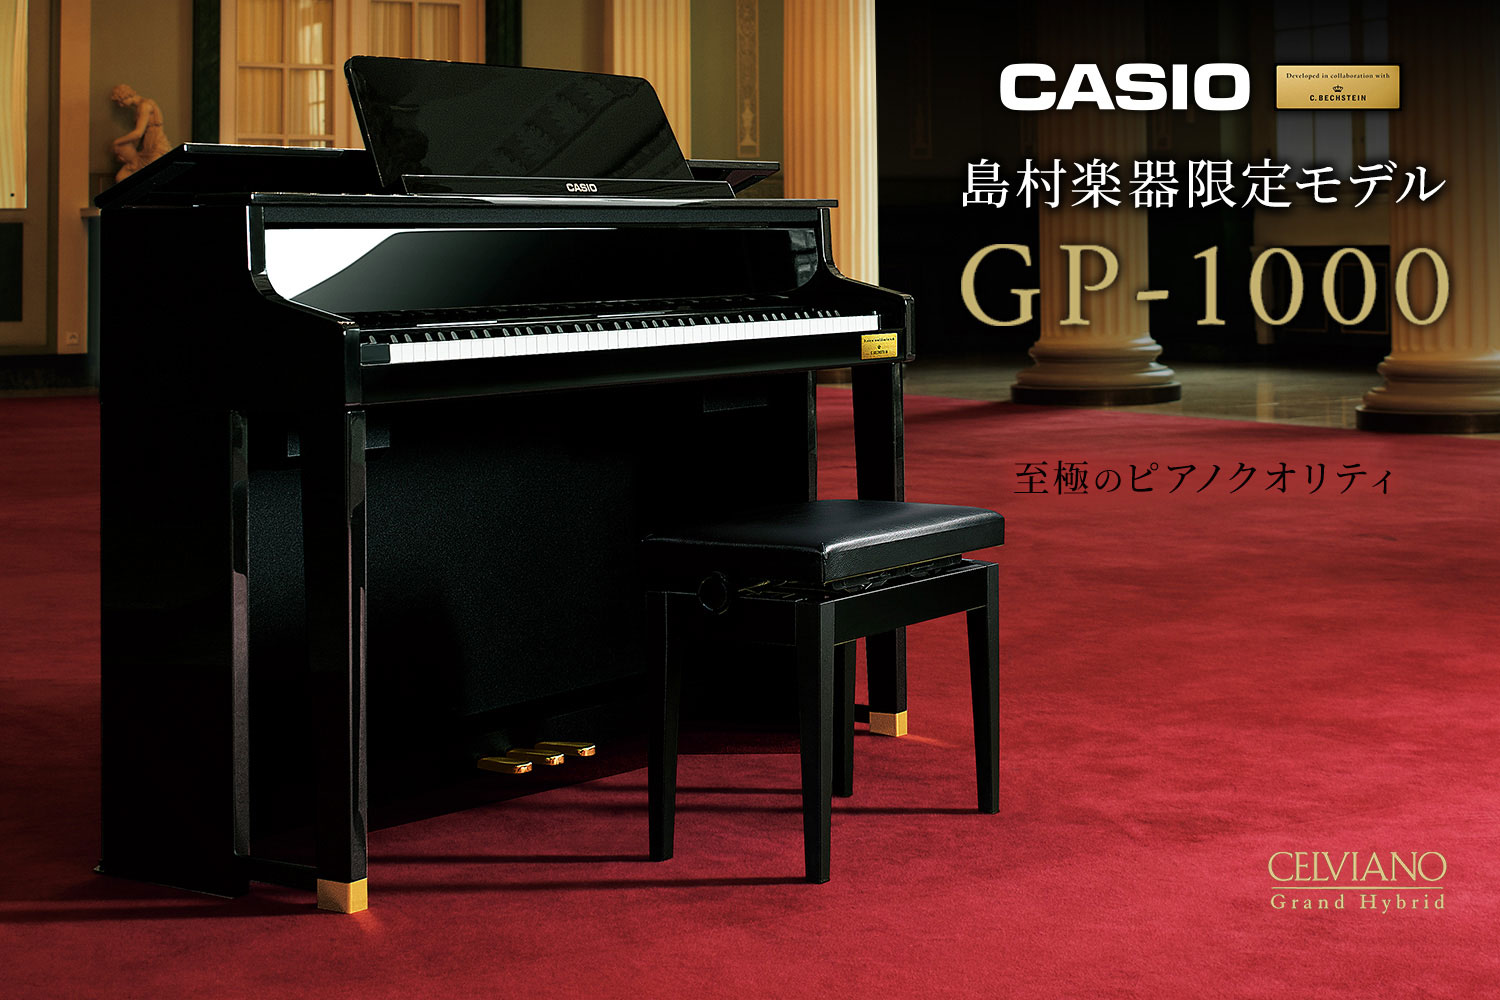 CASIO×C.ベヒシュタイン コラボレーション電子ピアノに島村楽器限定モデル「GP-1000」のご紹介